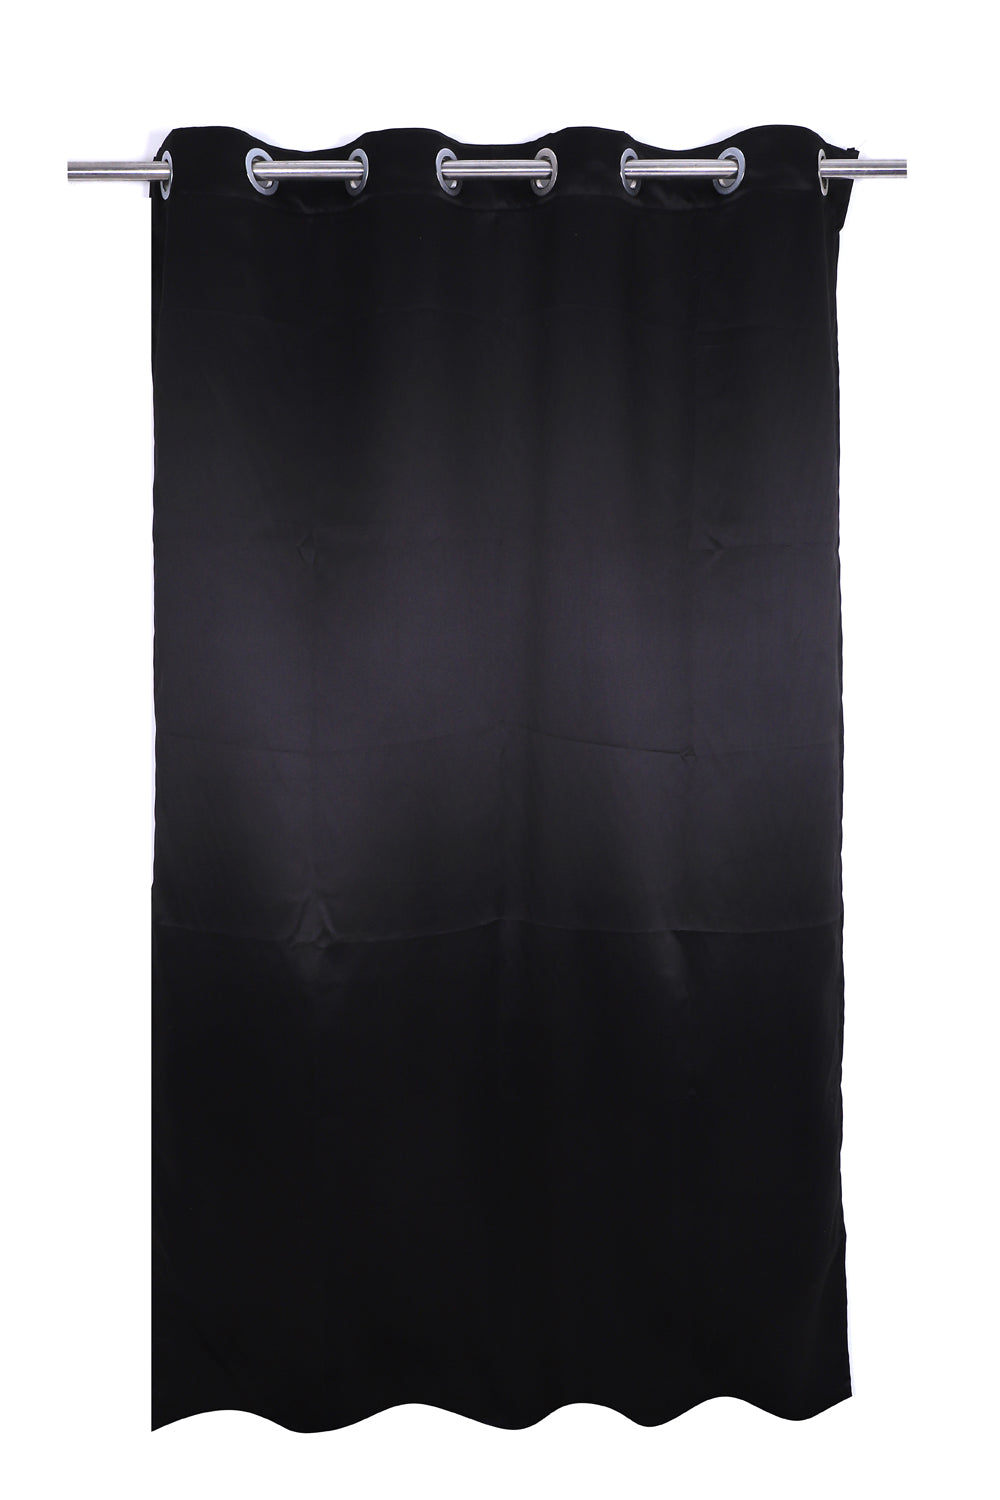 Blackout Plain Curtain - Black - PARDEWALE.in